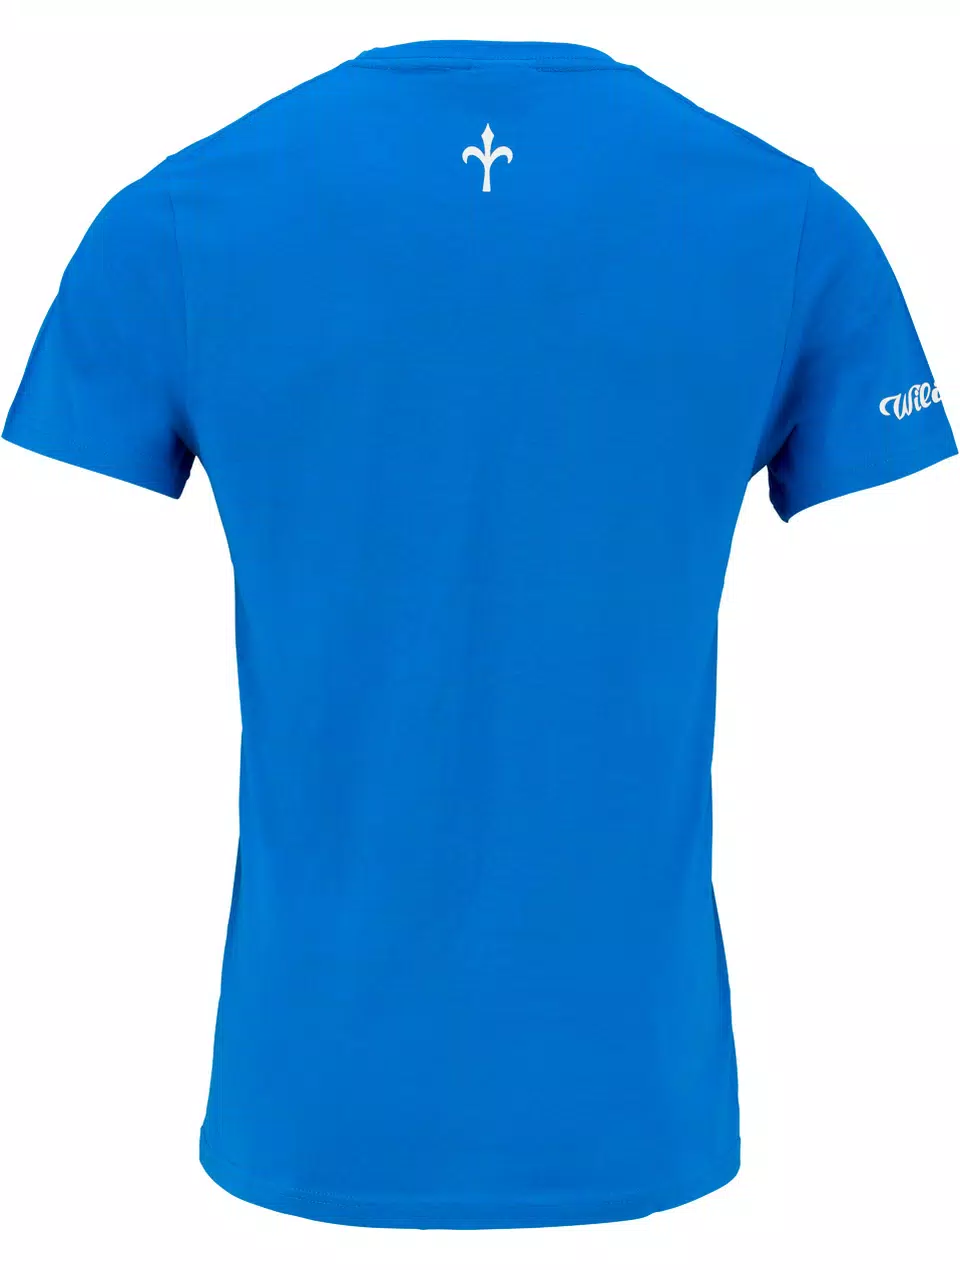 #Raisethebar T-Shirt light blue